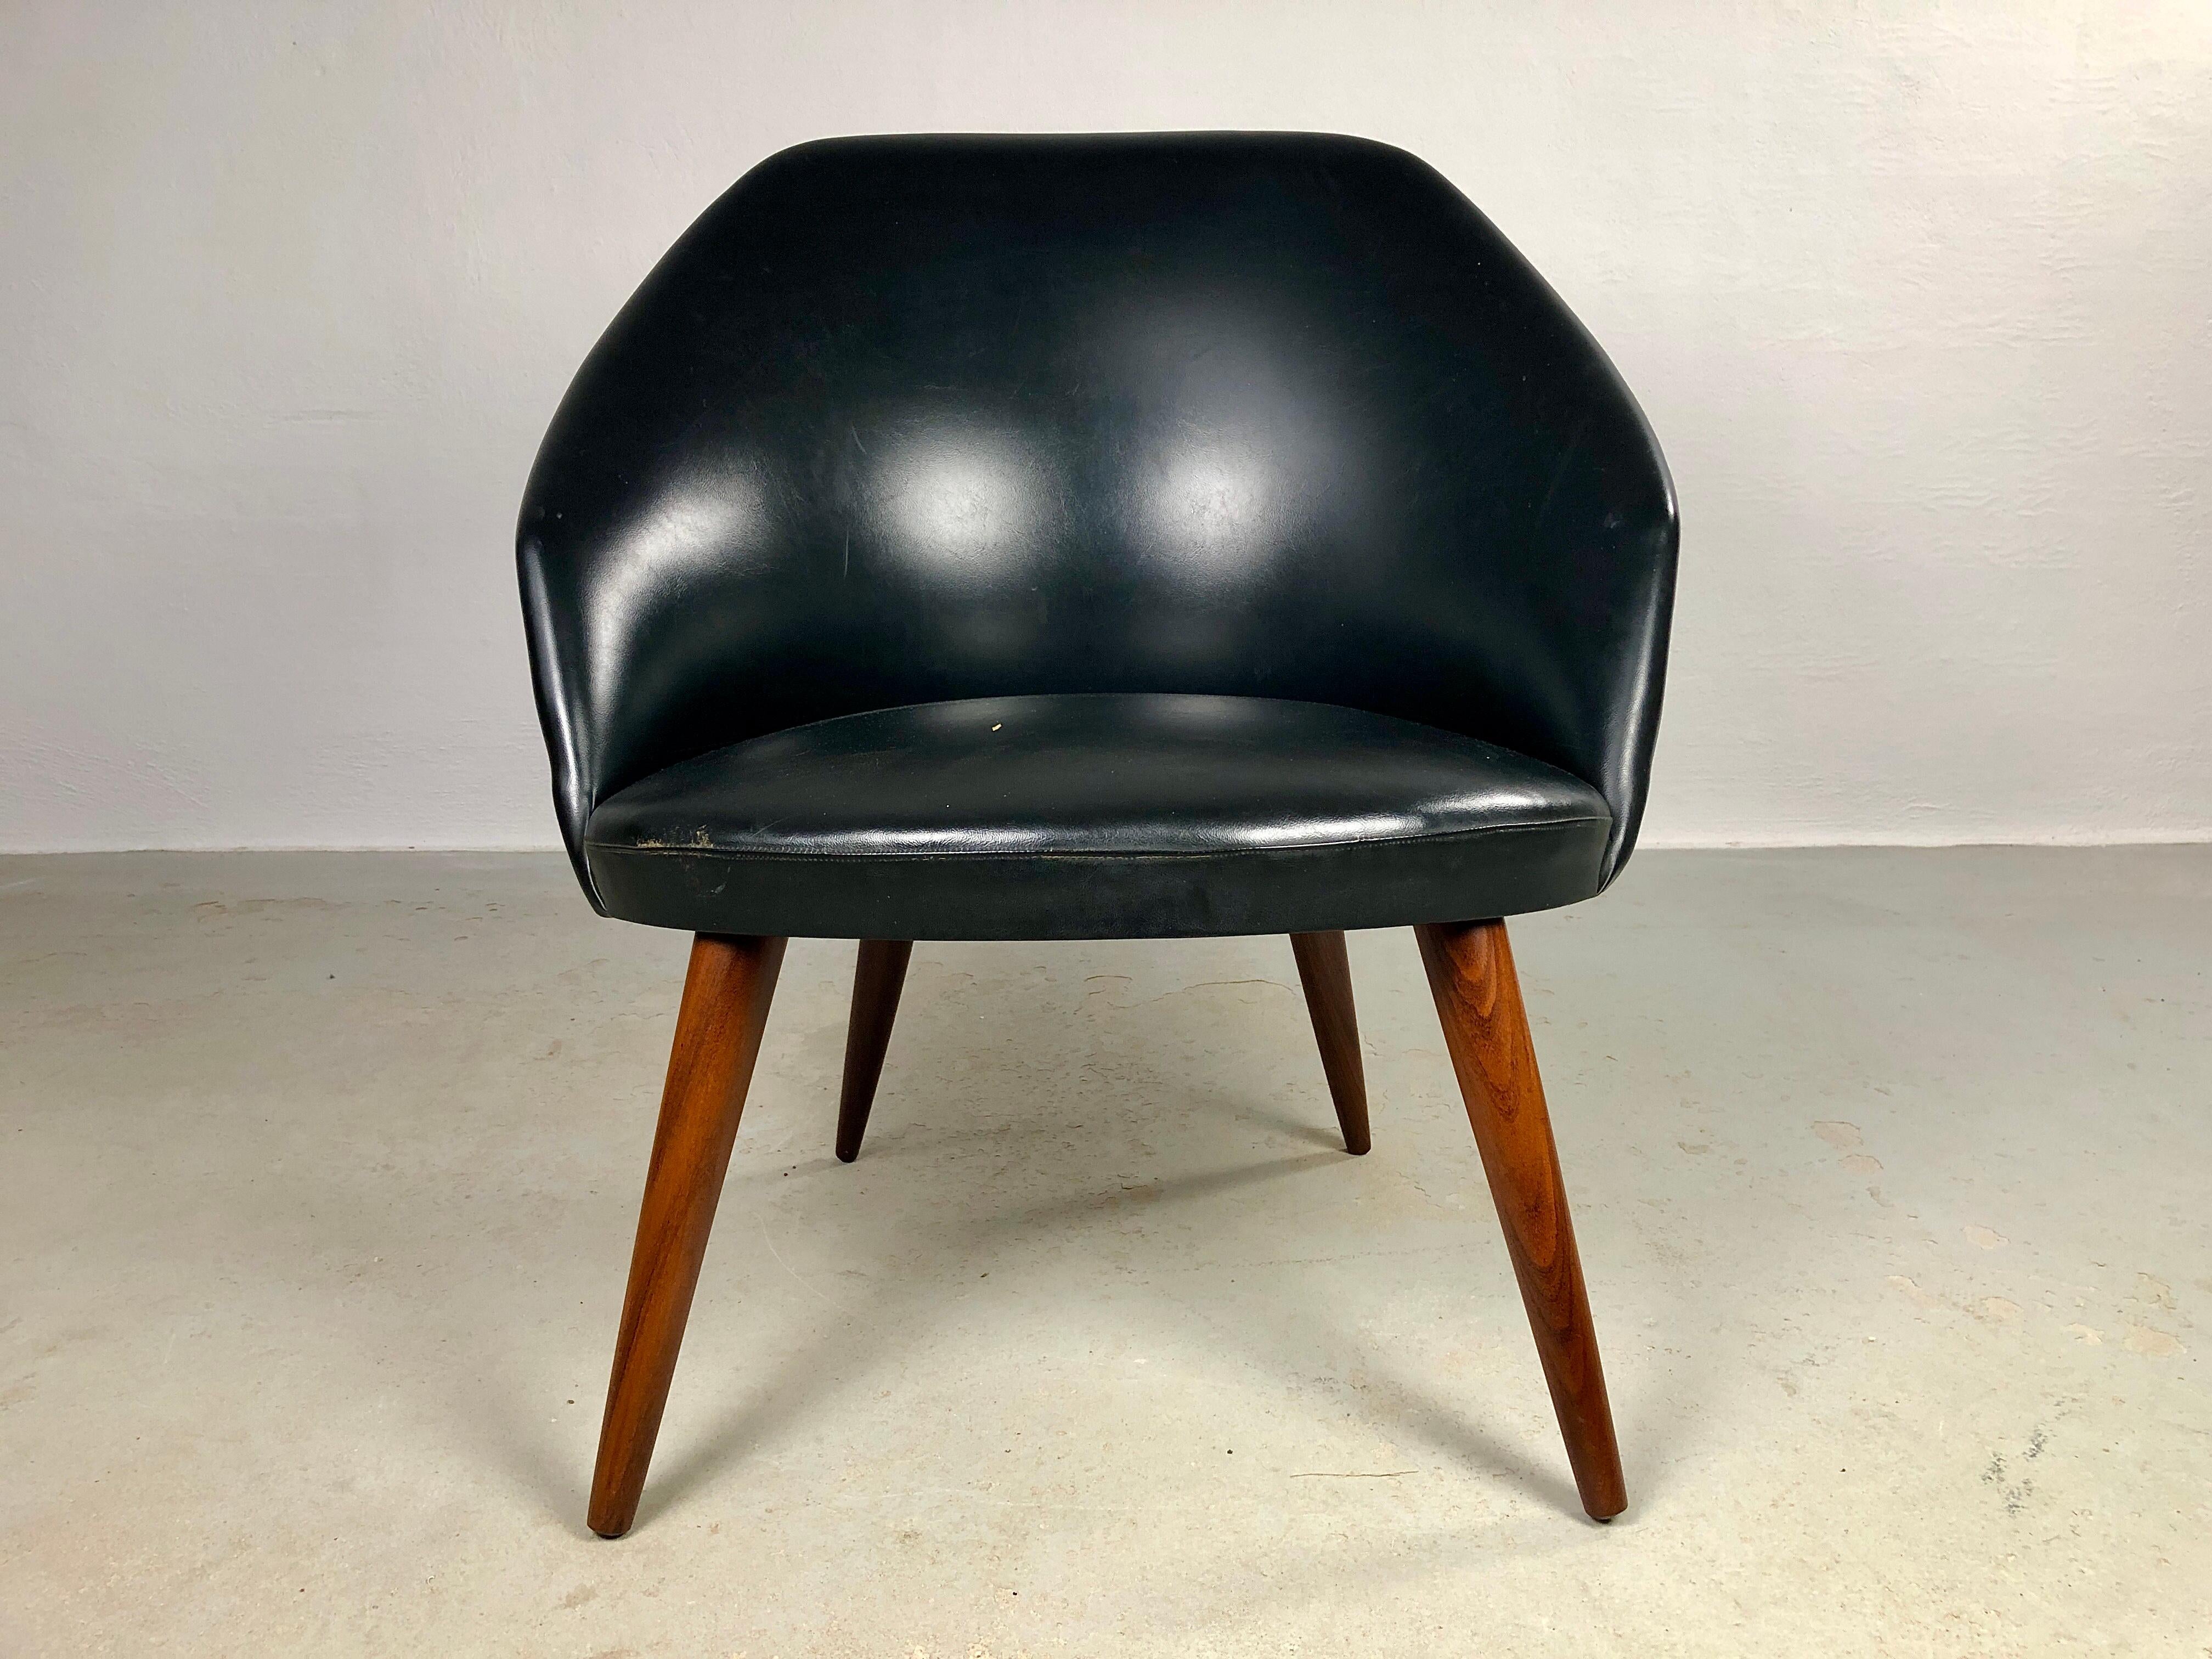 Chaise de salon danoise entièrement restaurée et retapissée en cuir noir.

Le fauteuil de salon présente des formes douces et organiques, de l'assise circulaire au dossier arrondi.

La chaise est en excellent état après avoir été soigneusement